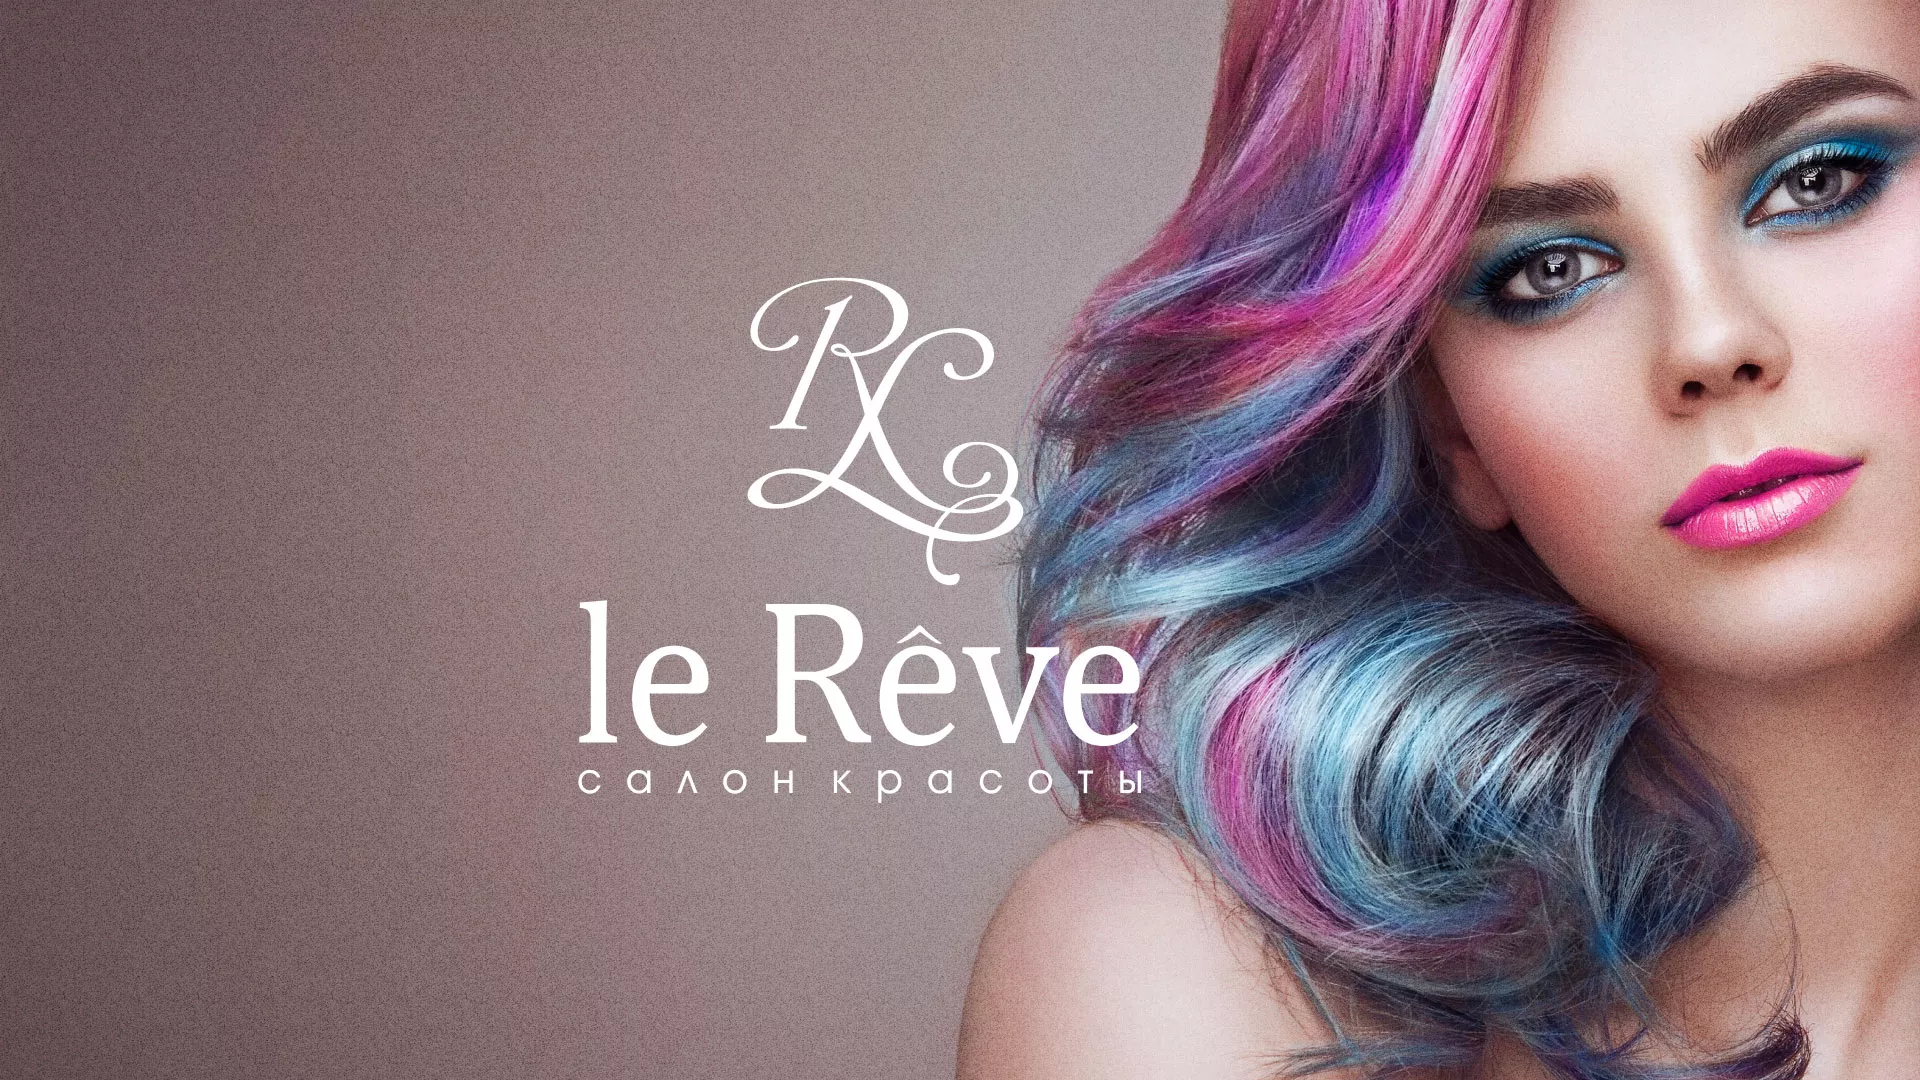 Создание сайта для салона красоты «Le Reve» в Санкт-Петербурге